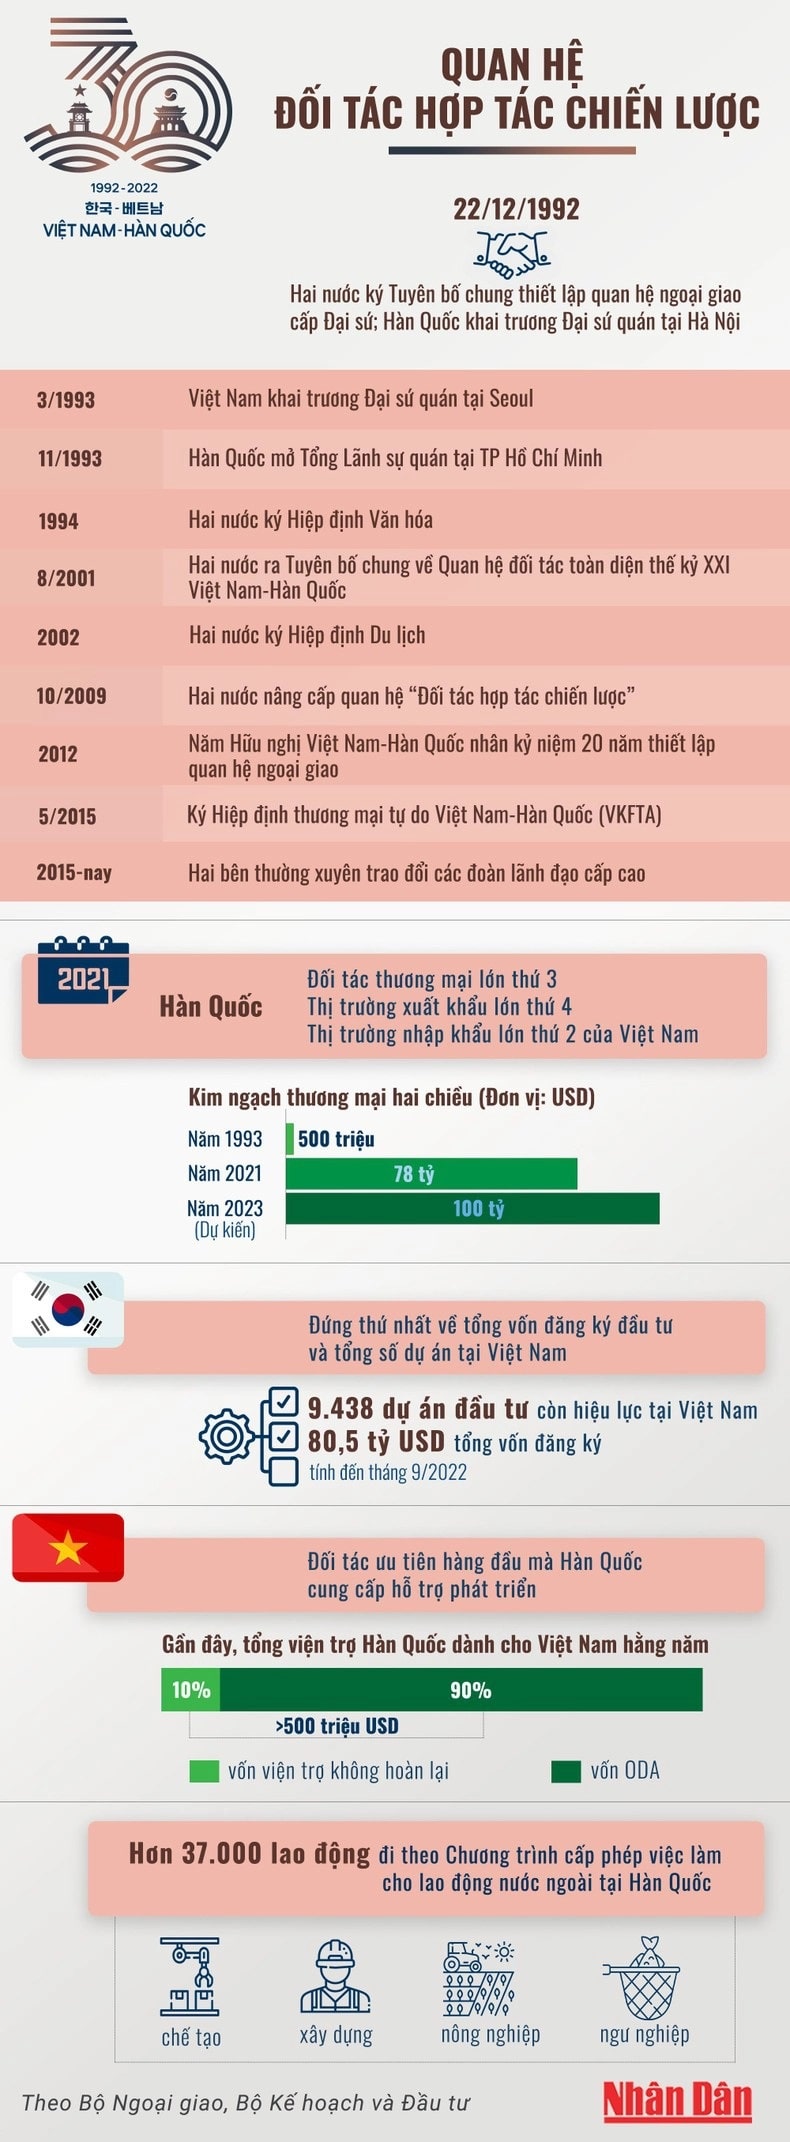 Quan hệ Việt Nam-Hàn Quốc: 30 năm nhìn lại